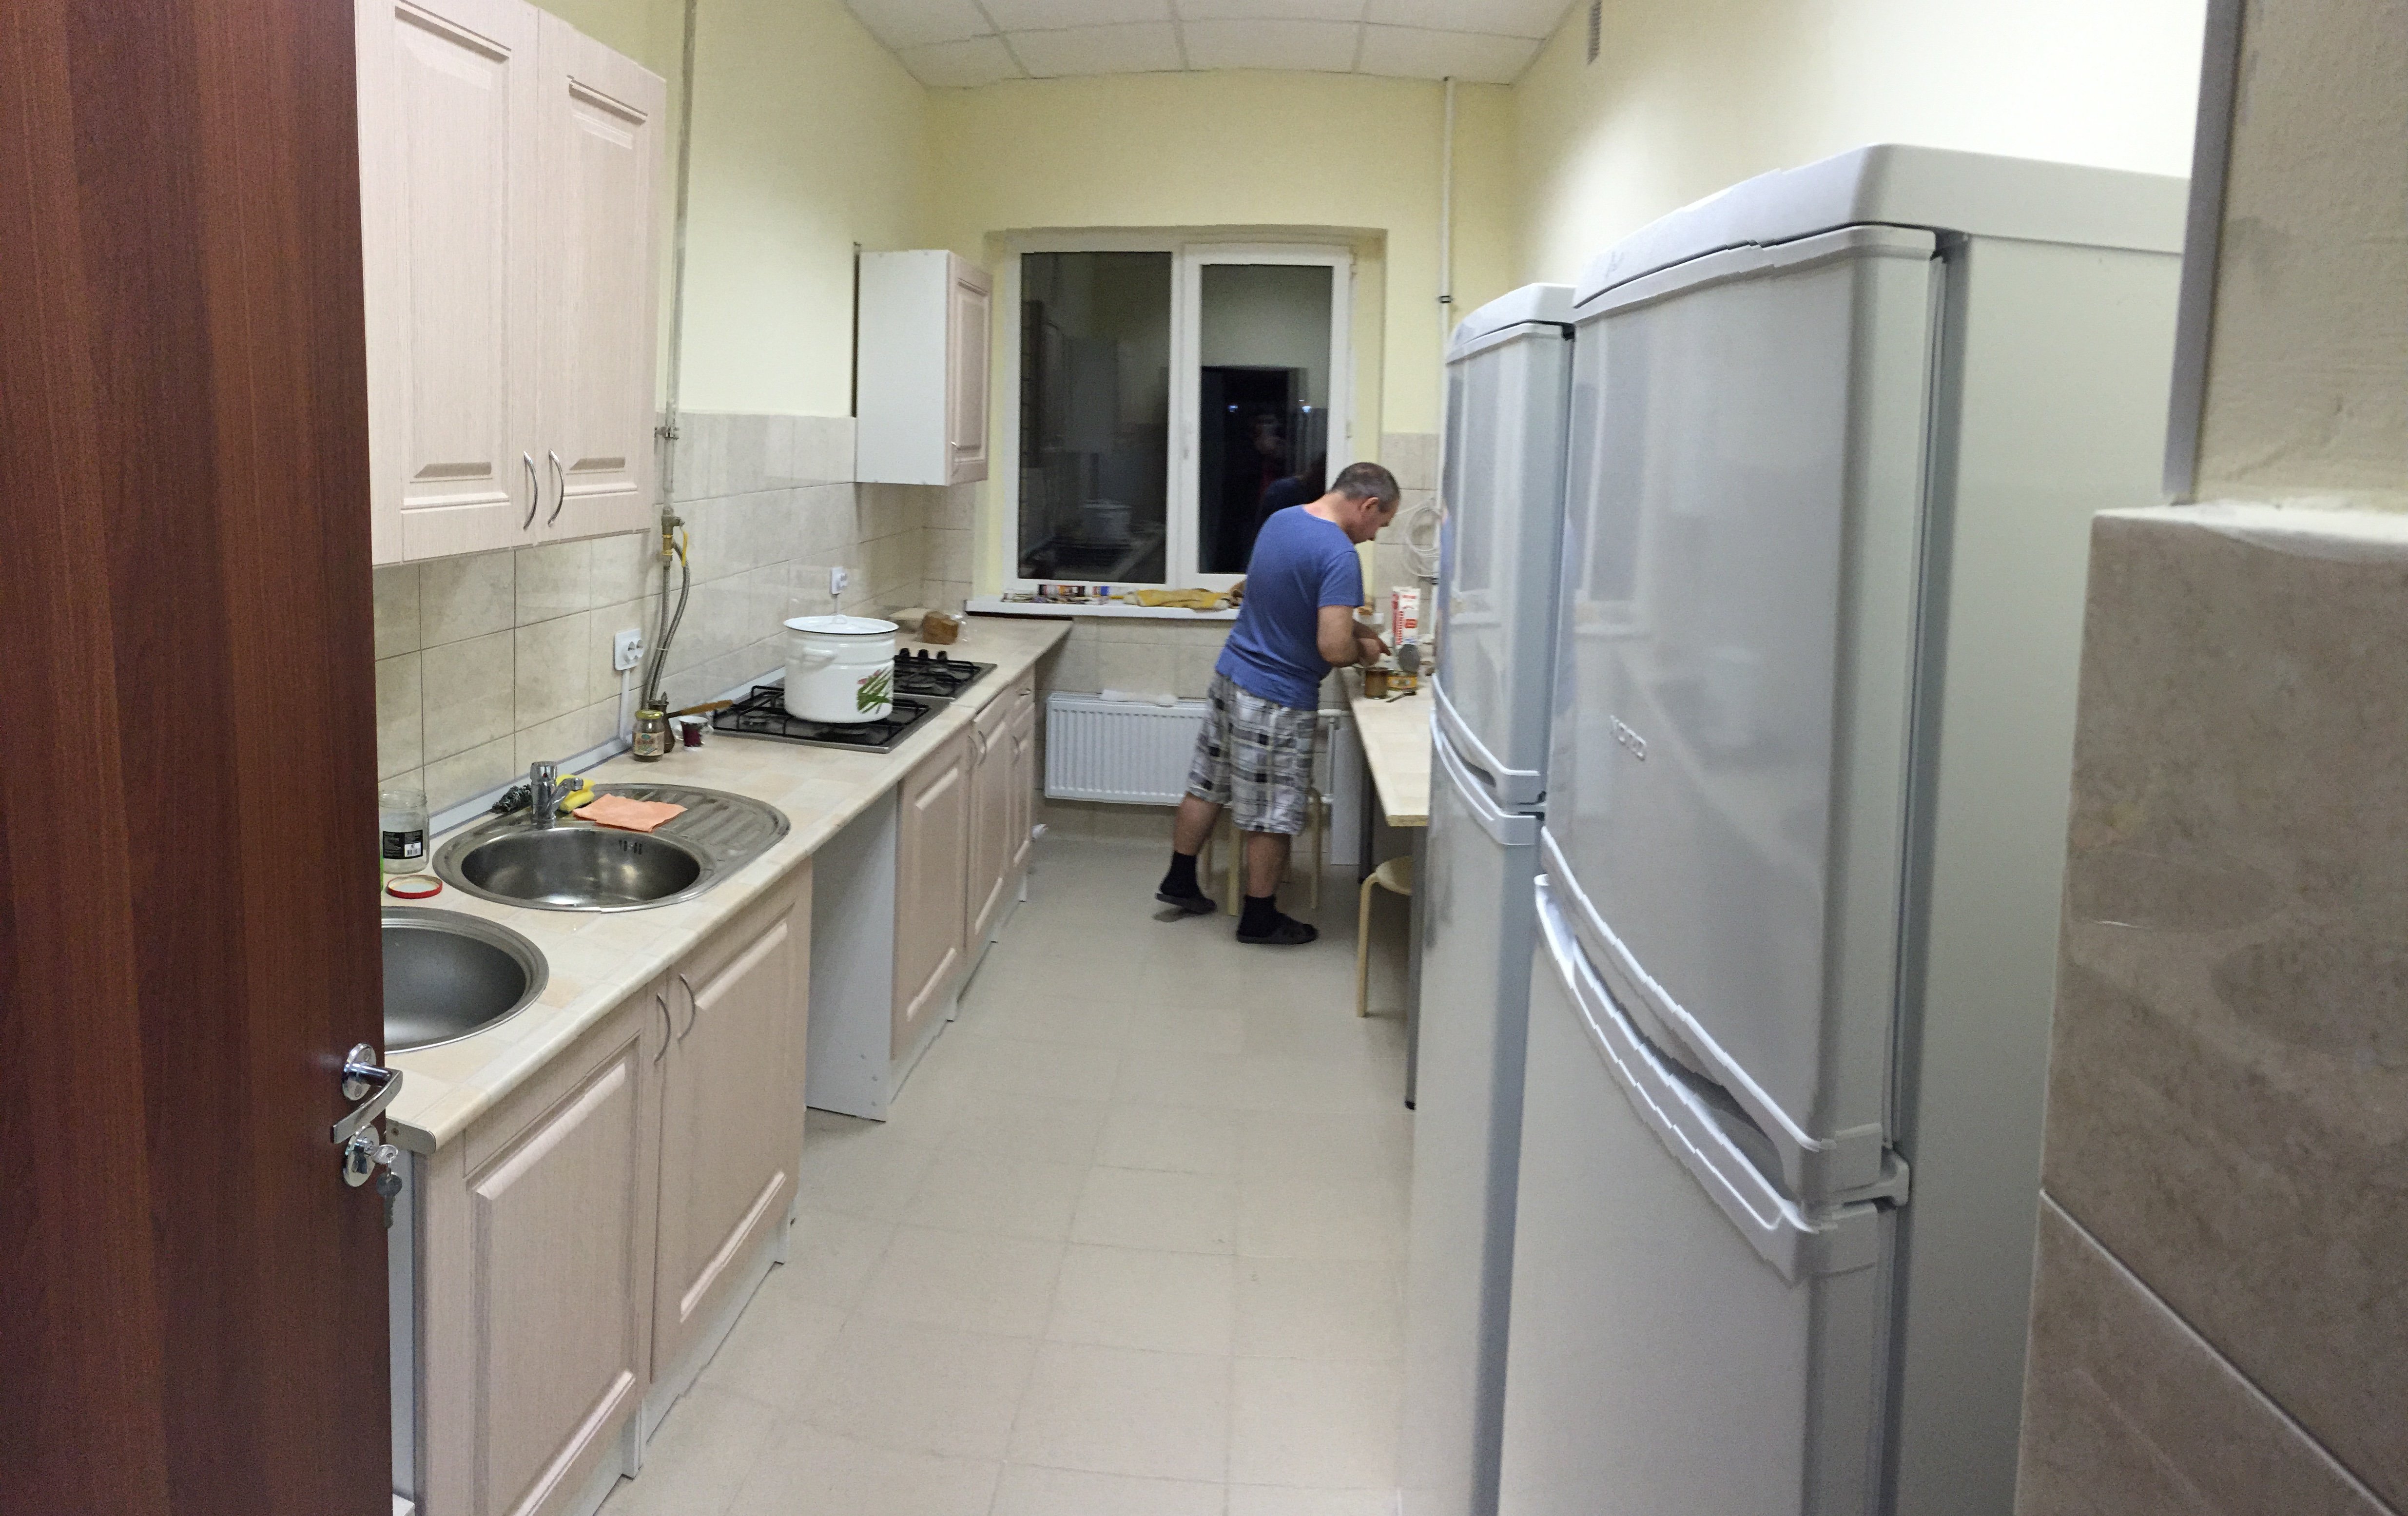 Общая кухня в общежитии. Кухня в общежитии. Ванная в общежитии. Санузел в комнате общежития.